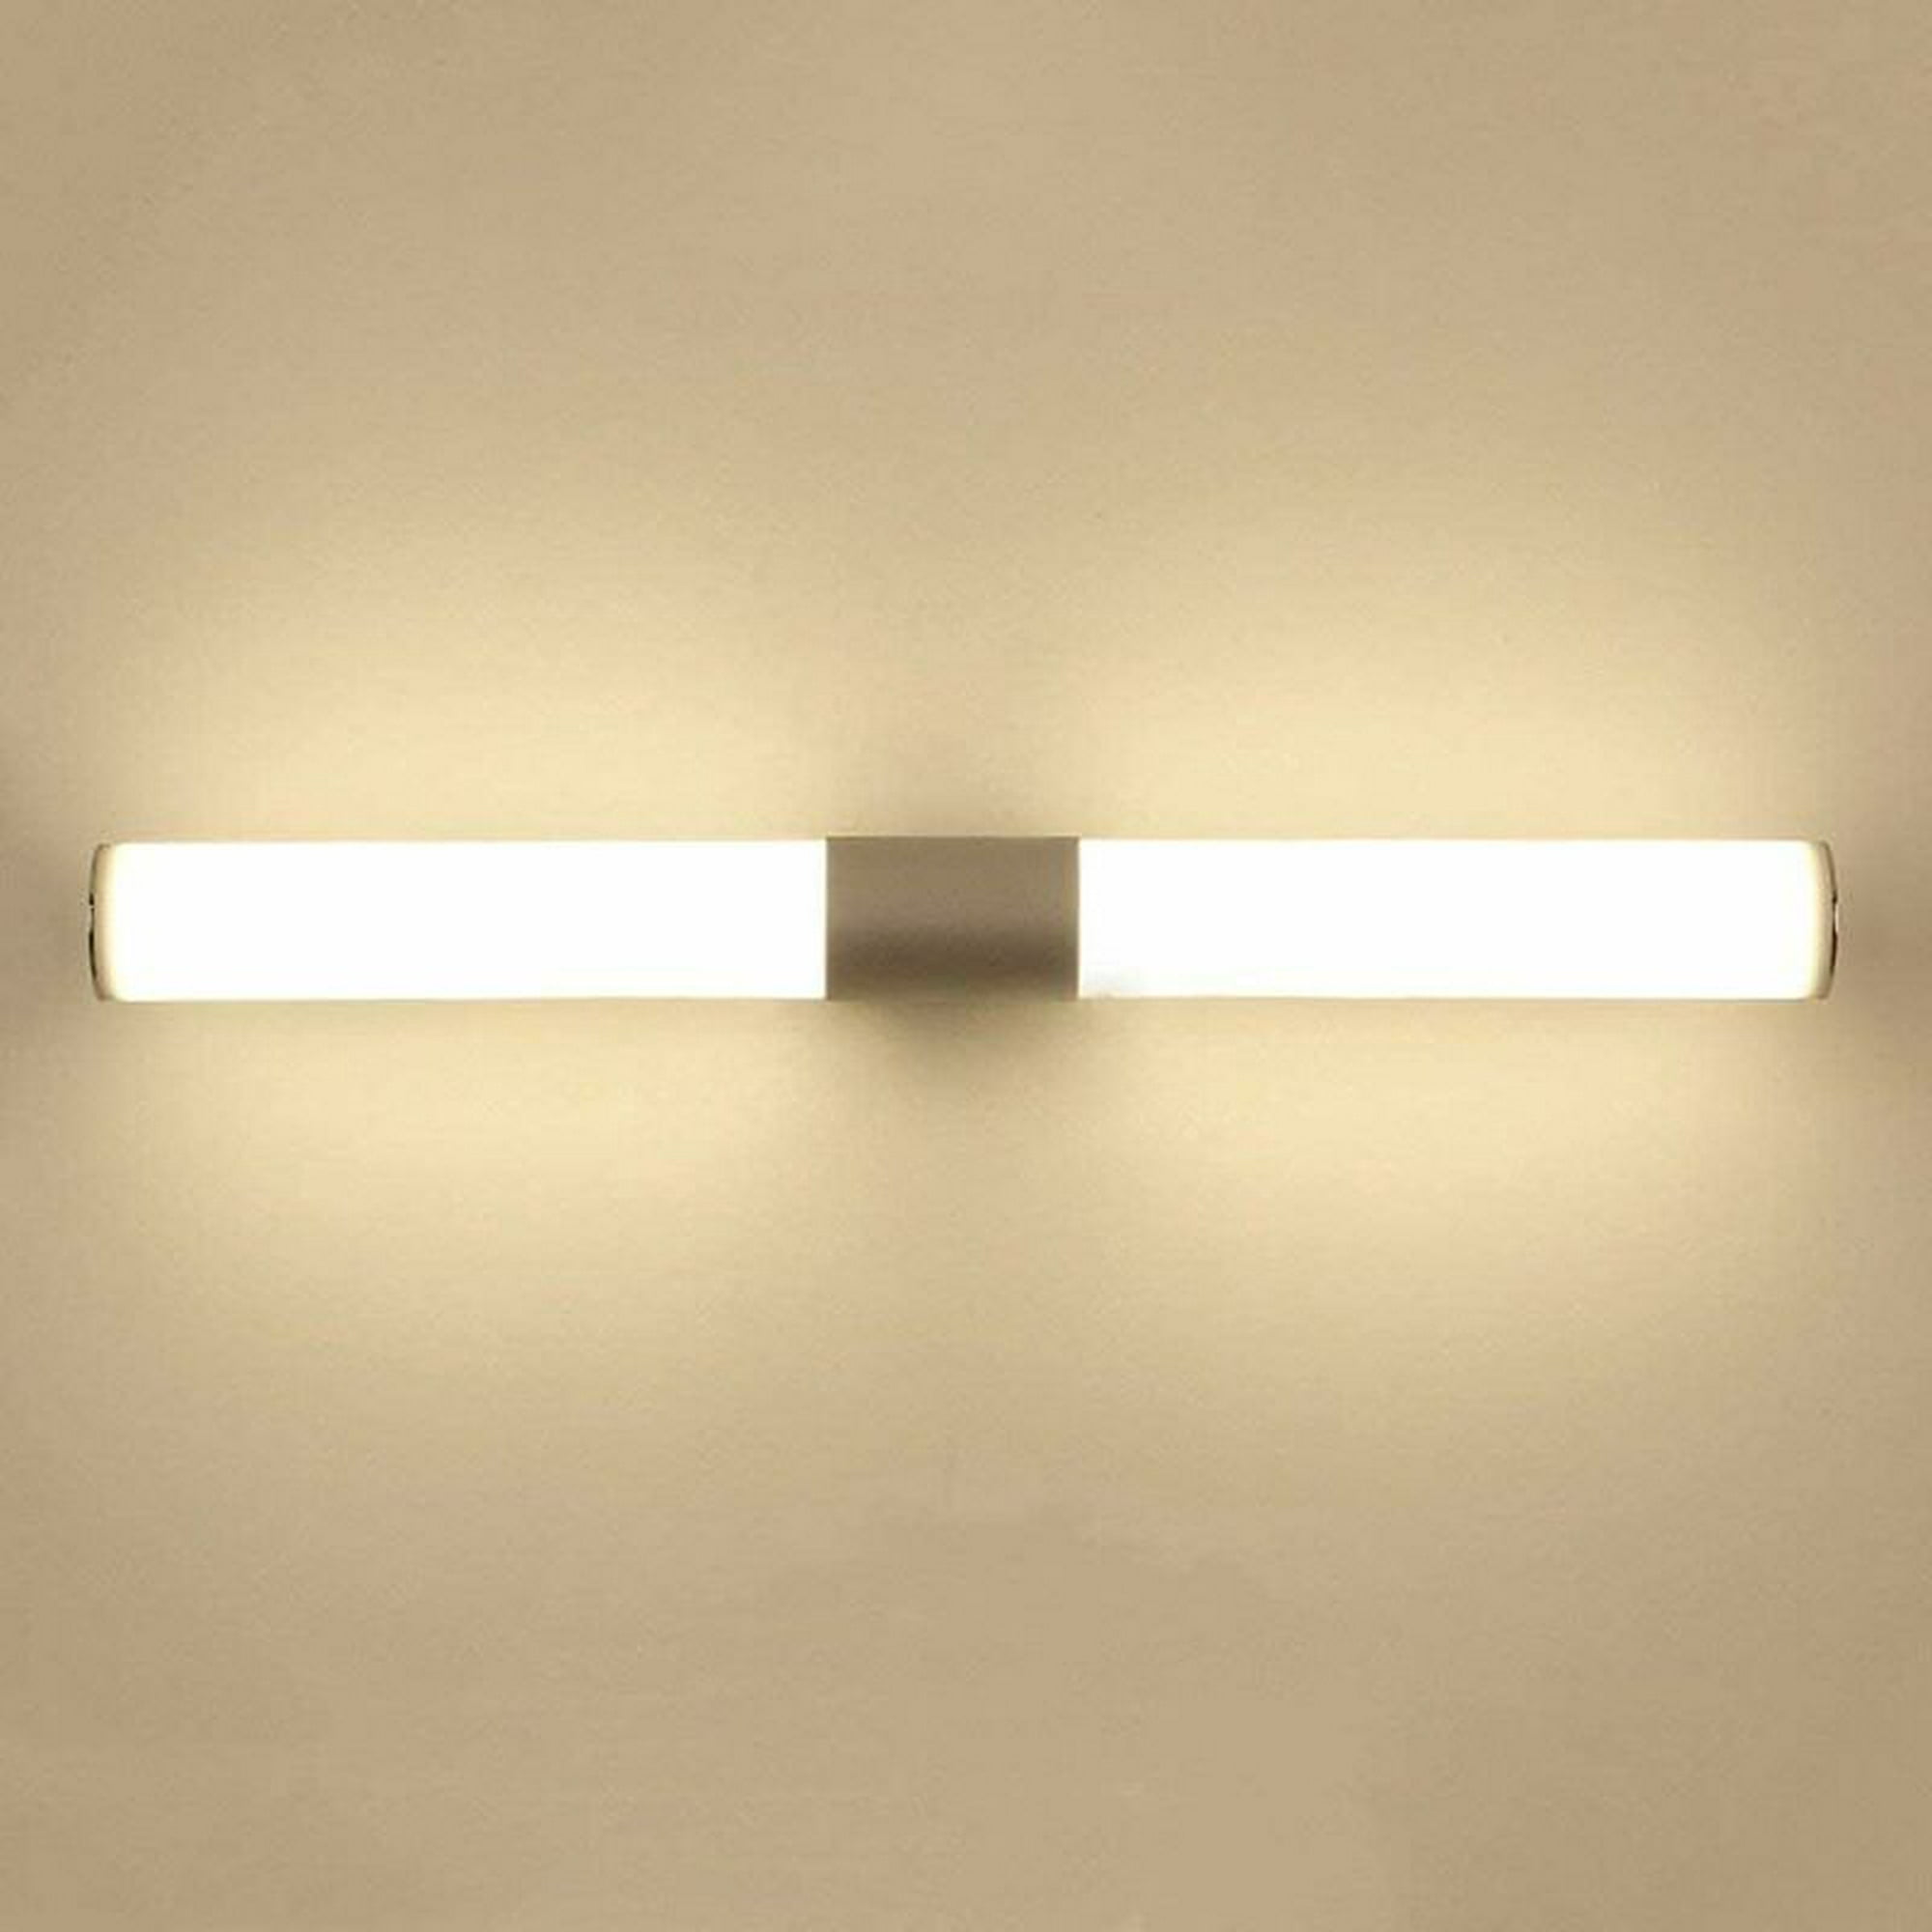 OOWOLF 12W 1200LM 6000K Lámpara LED de Pared, 44cm Lámpara de Espejo  Aplique de Baño LED Luz Natural para Espejo Muebles de Ma…